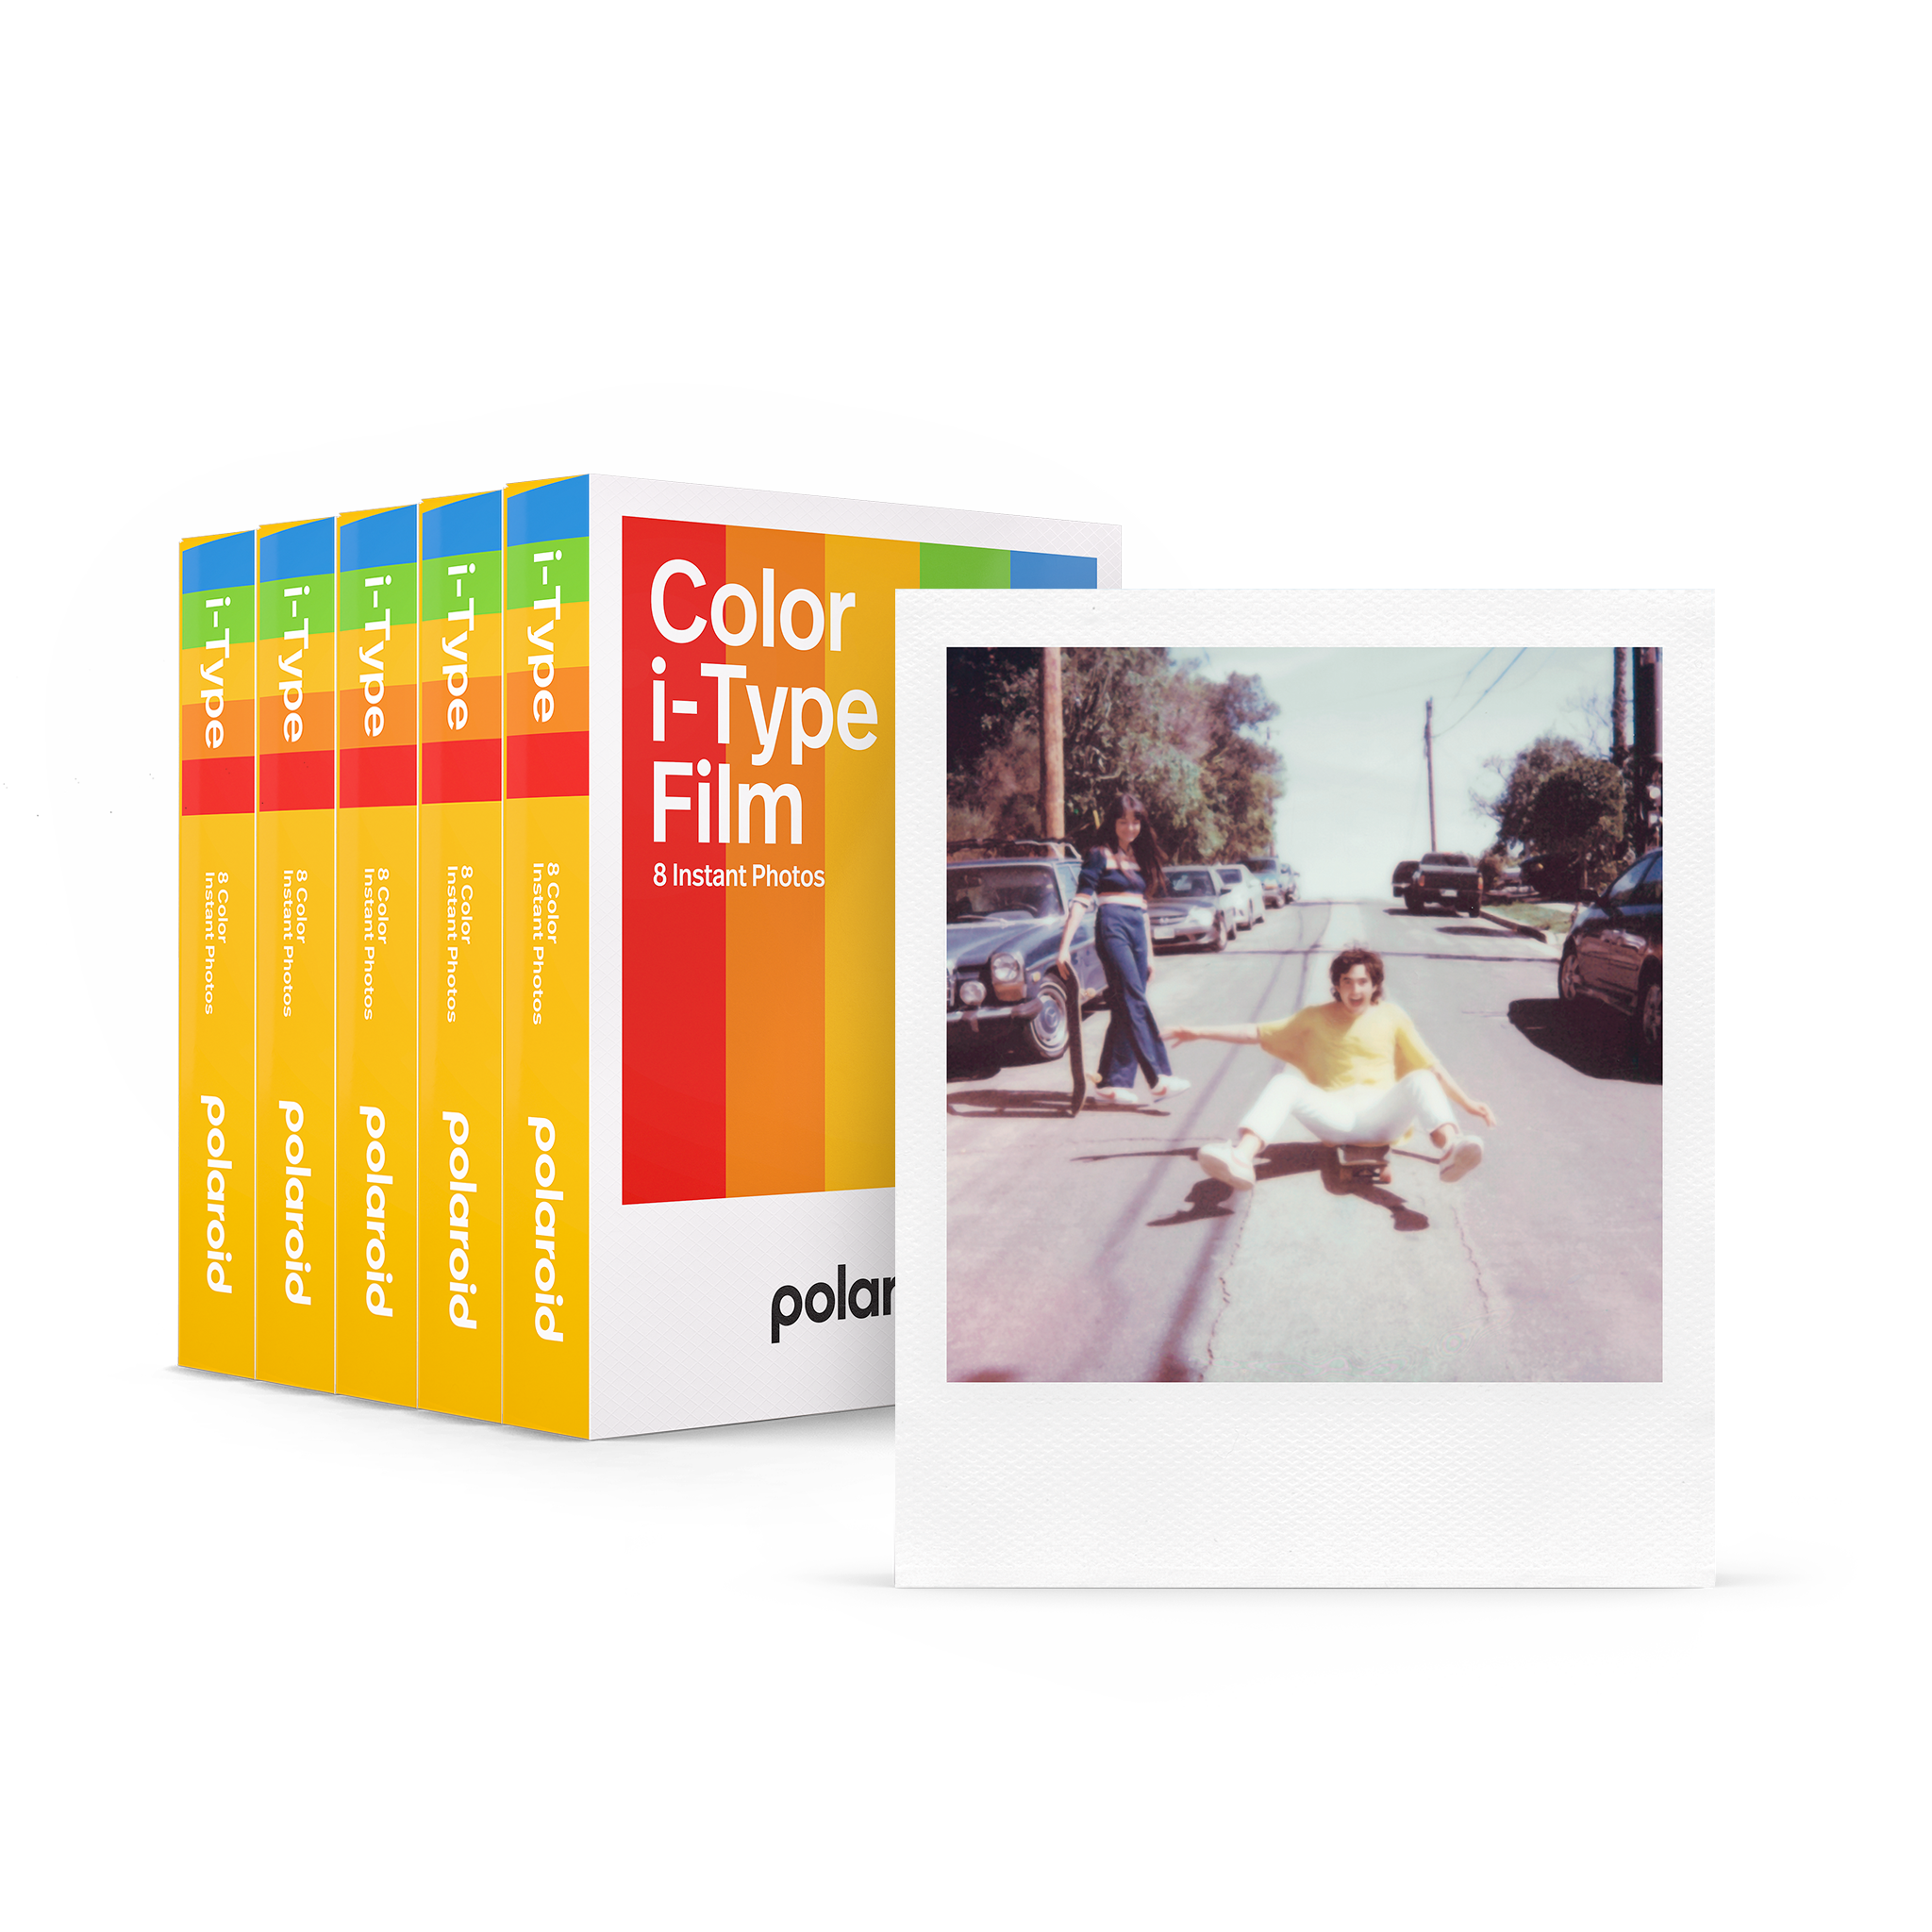 Película Polaroid I-Type Color para OneStep 2 y otras